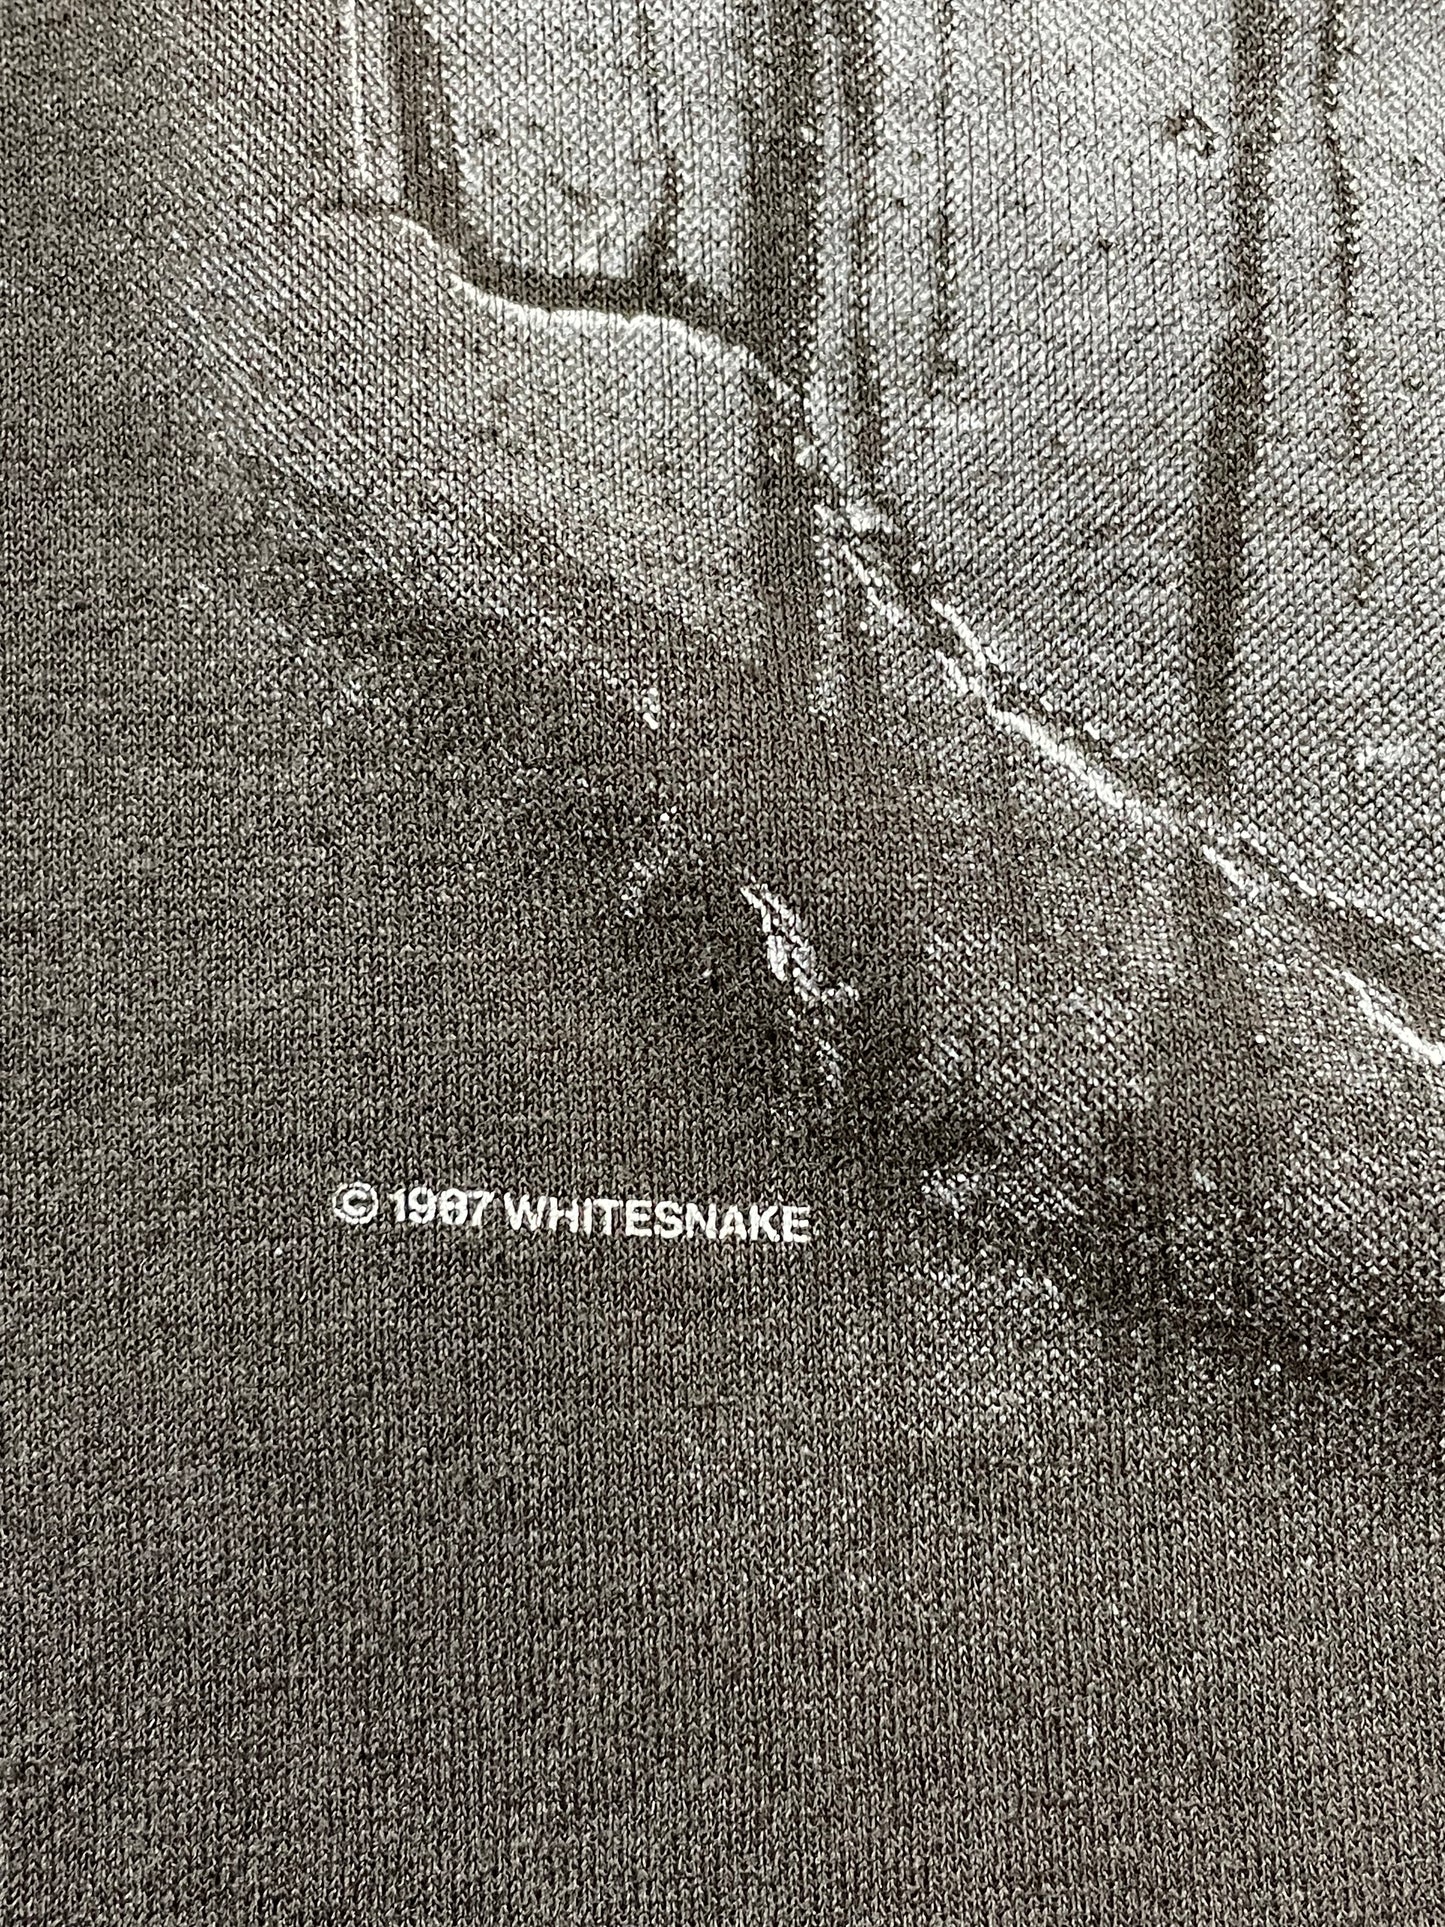 1987 Whitesnake Tour Tee